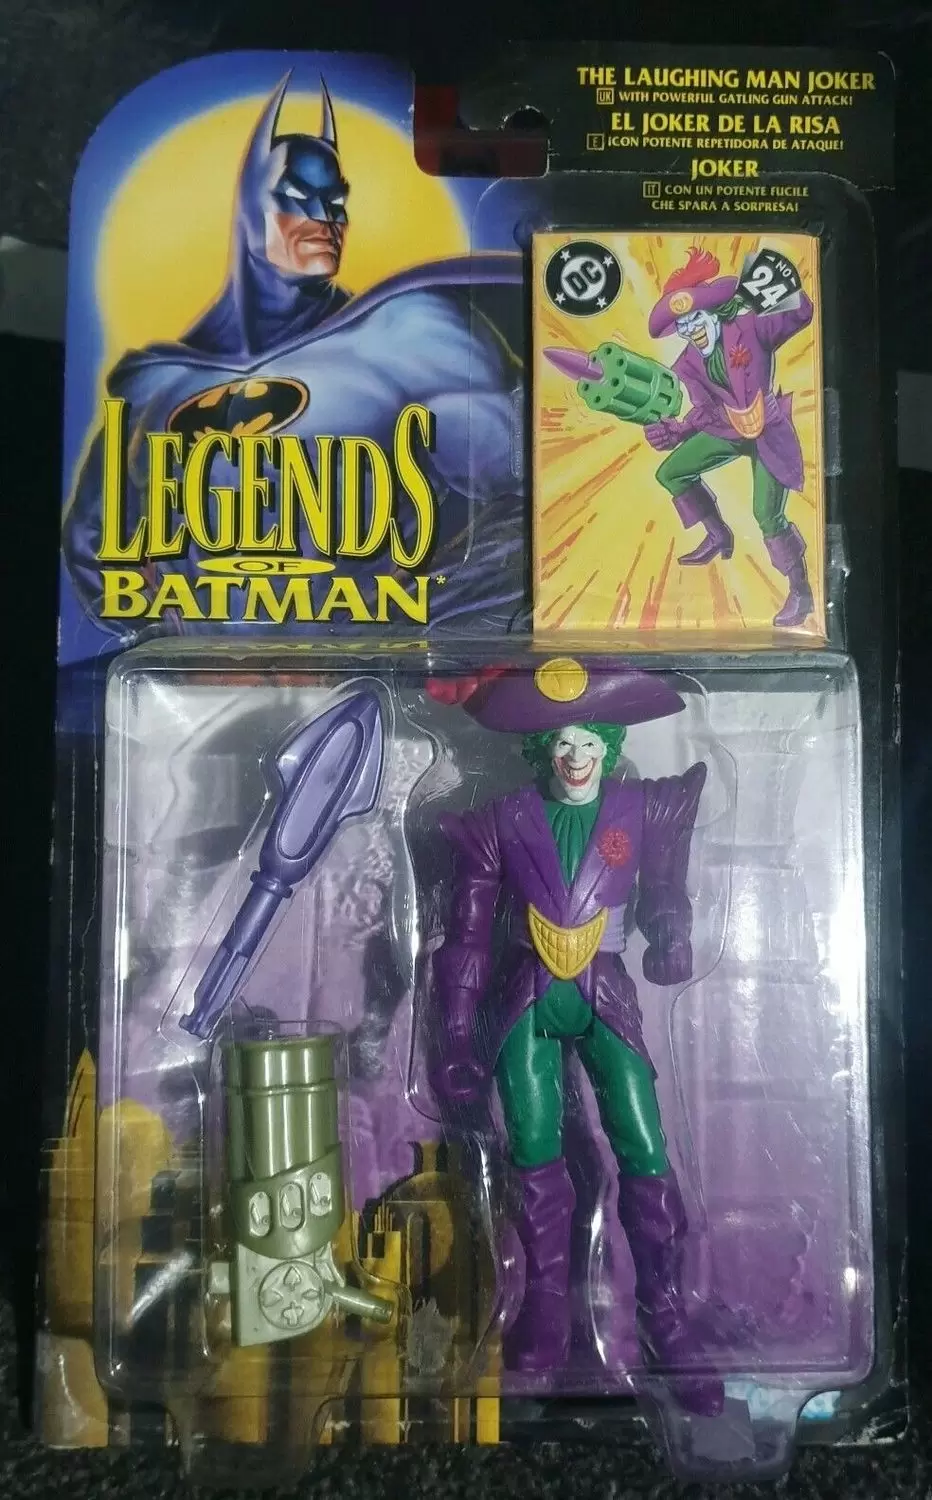 Legends of Batman - The Laughing Man Joker